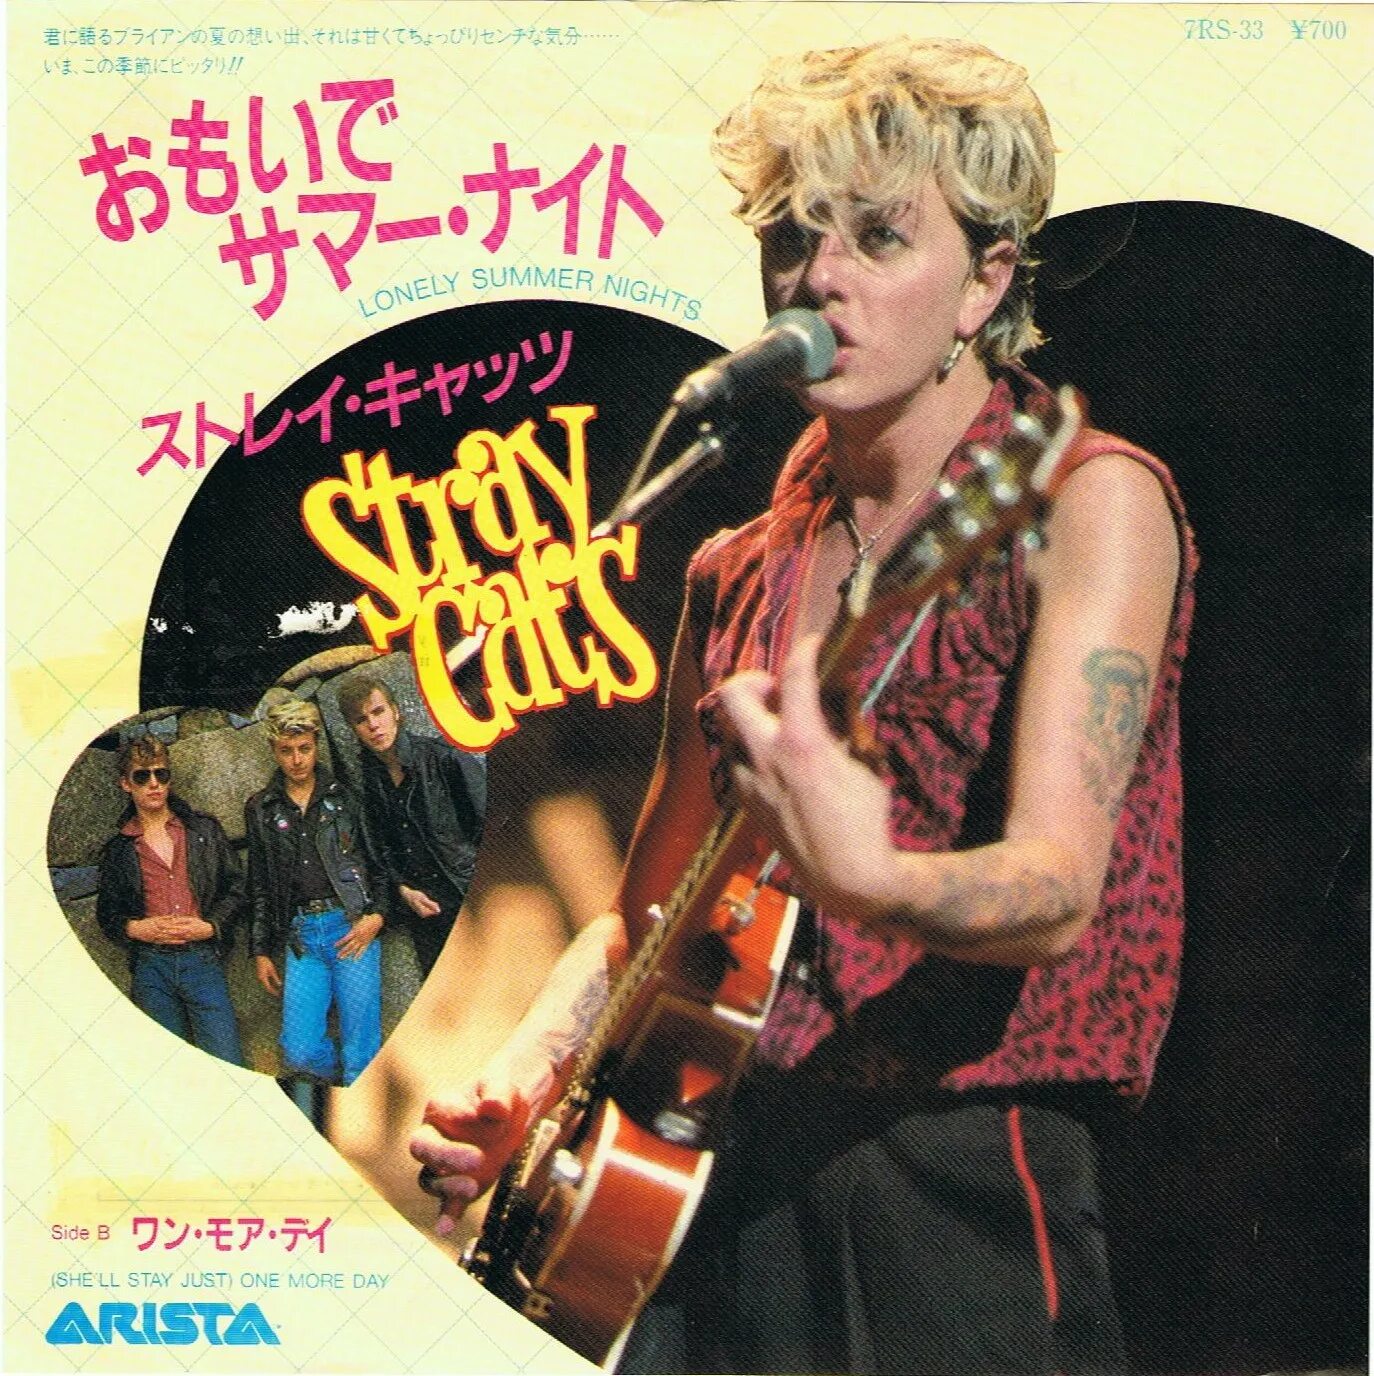 Stray cats ubangi stomp. Stray Cats 1981. Stray Cats альбом 1981. Stray Cats album 1981 обложка. Brian Setzer & Stray Cats обложка альбома.